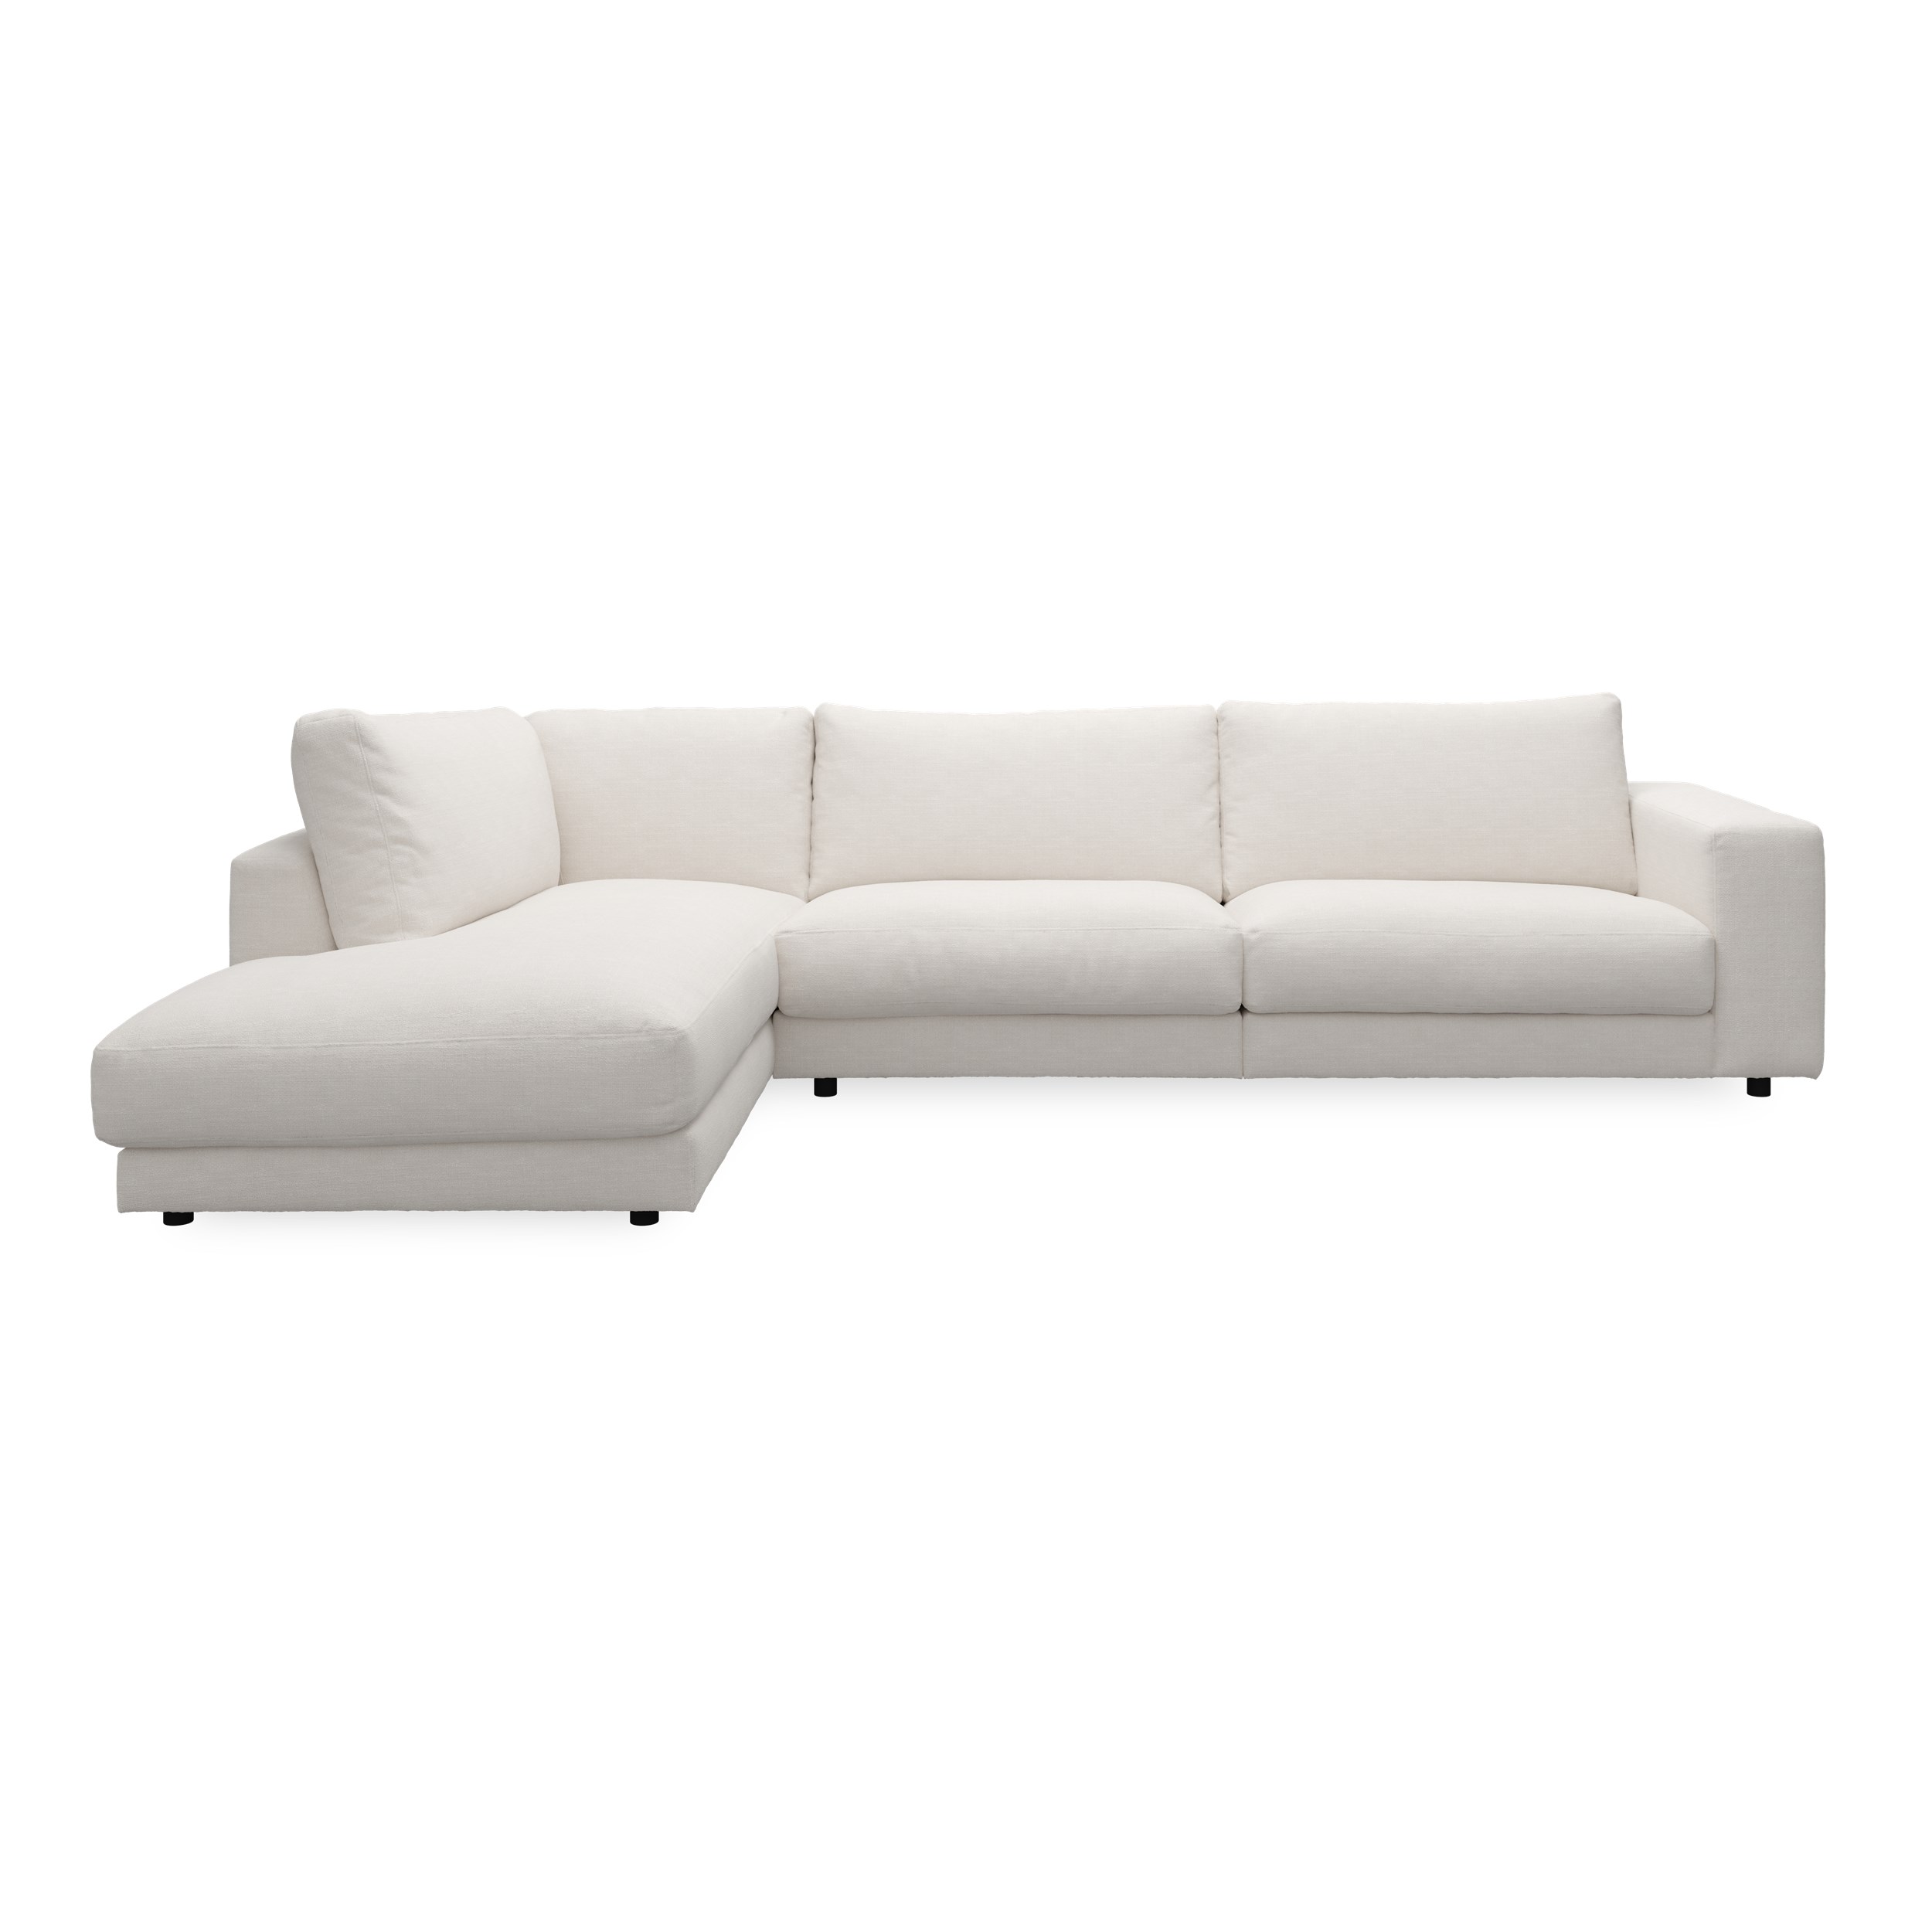 Bennent vänstervänd soffa med divan - Picasso Natur klädsel, ben i svart plast och S:skum/fib/din/sili R:Dun/skum